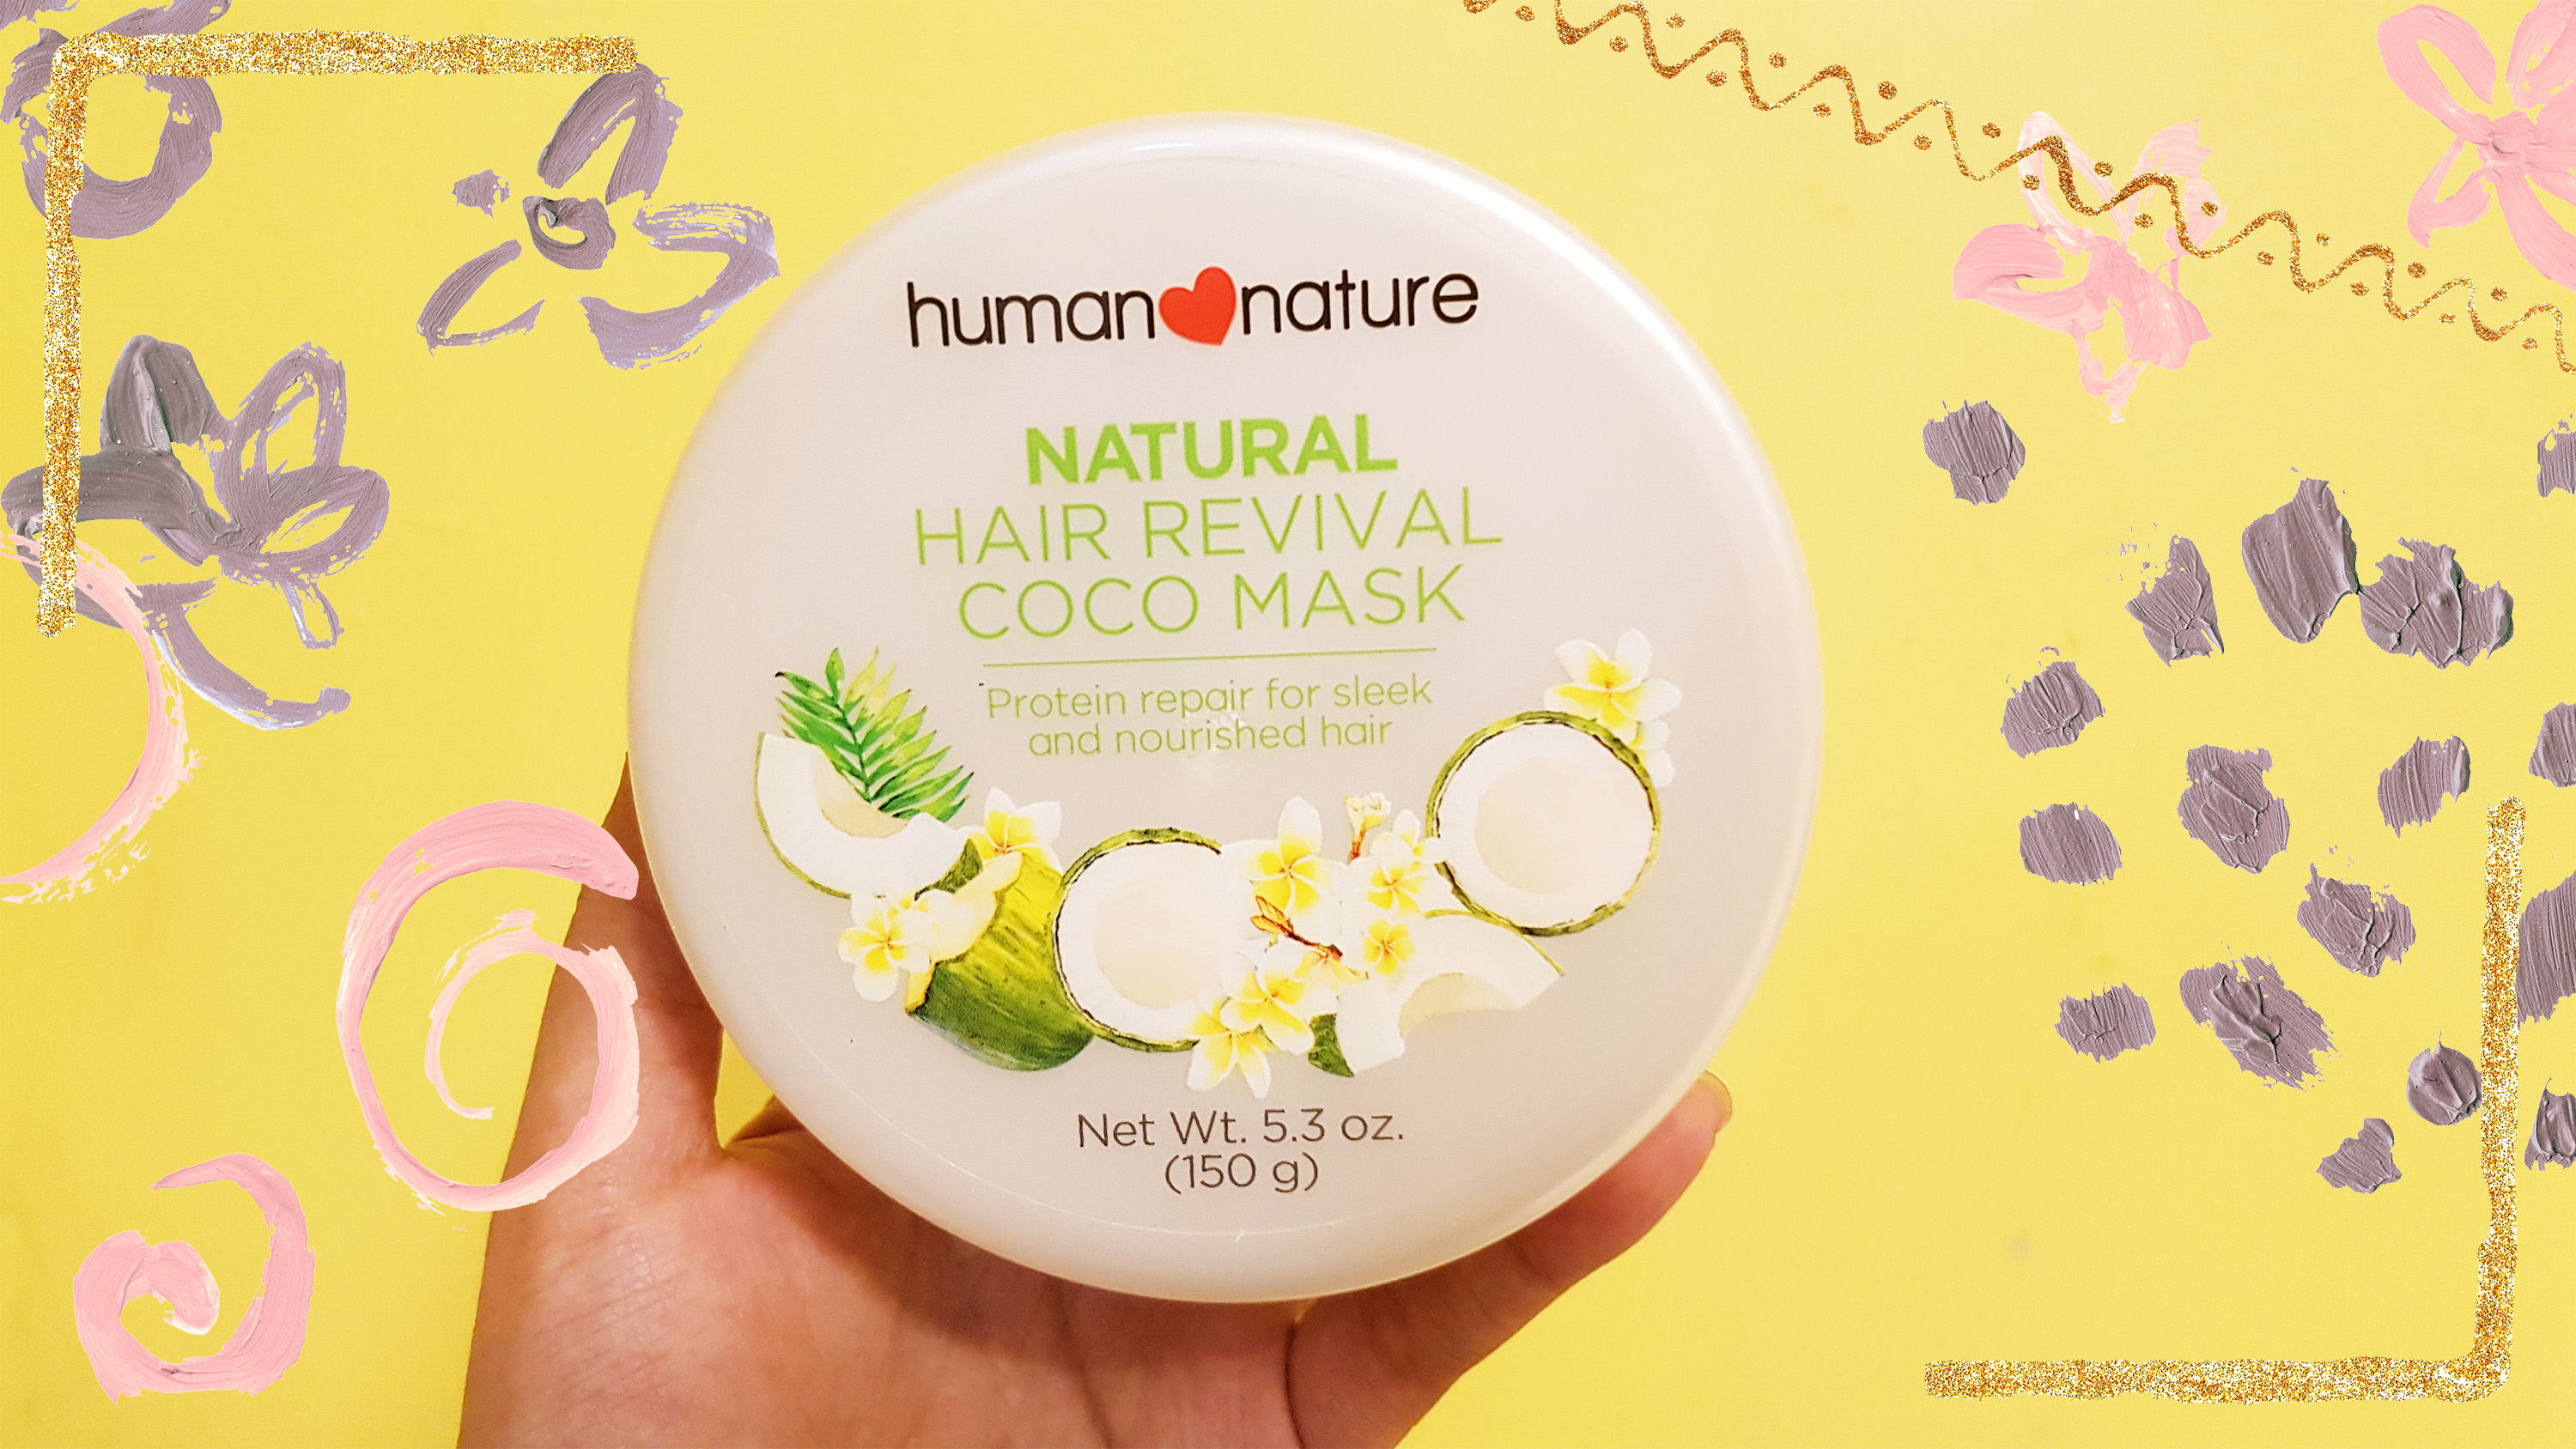 human nature natural hair revival coco mask review